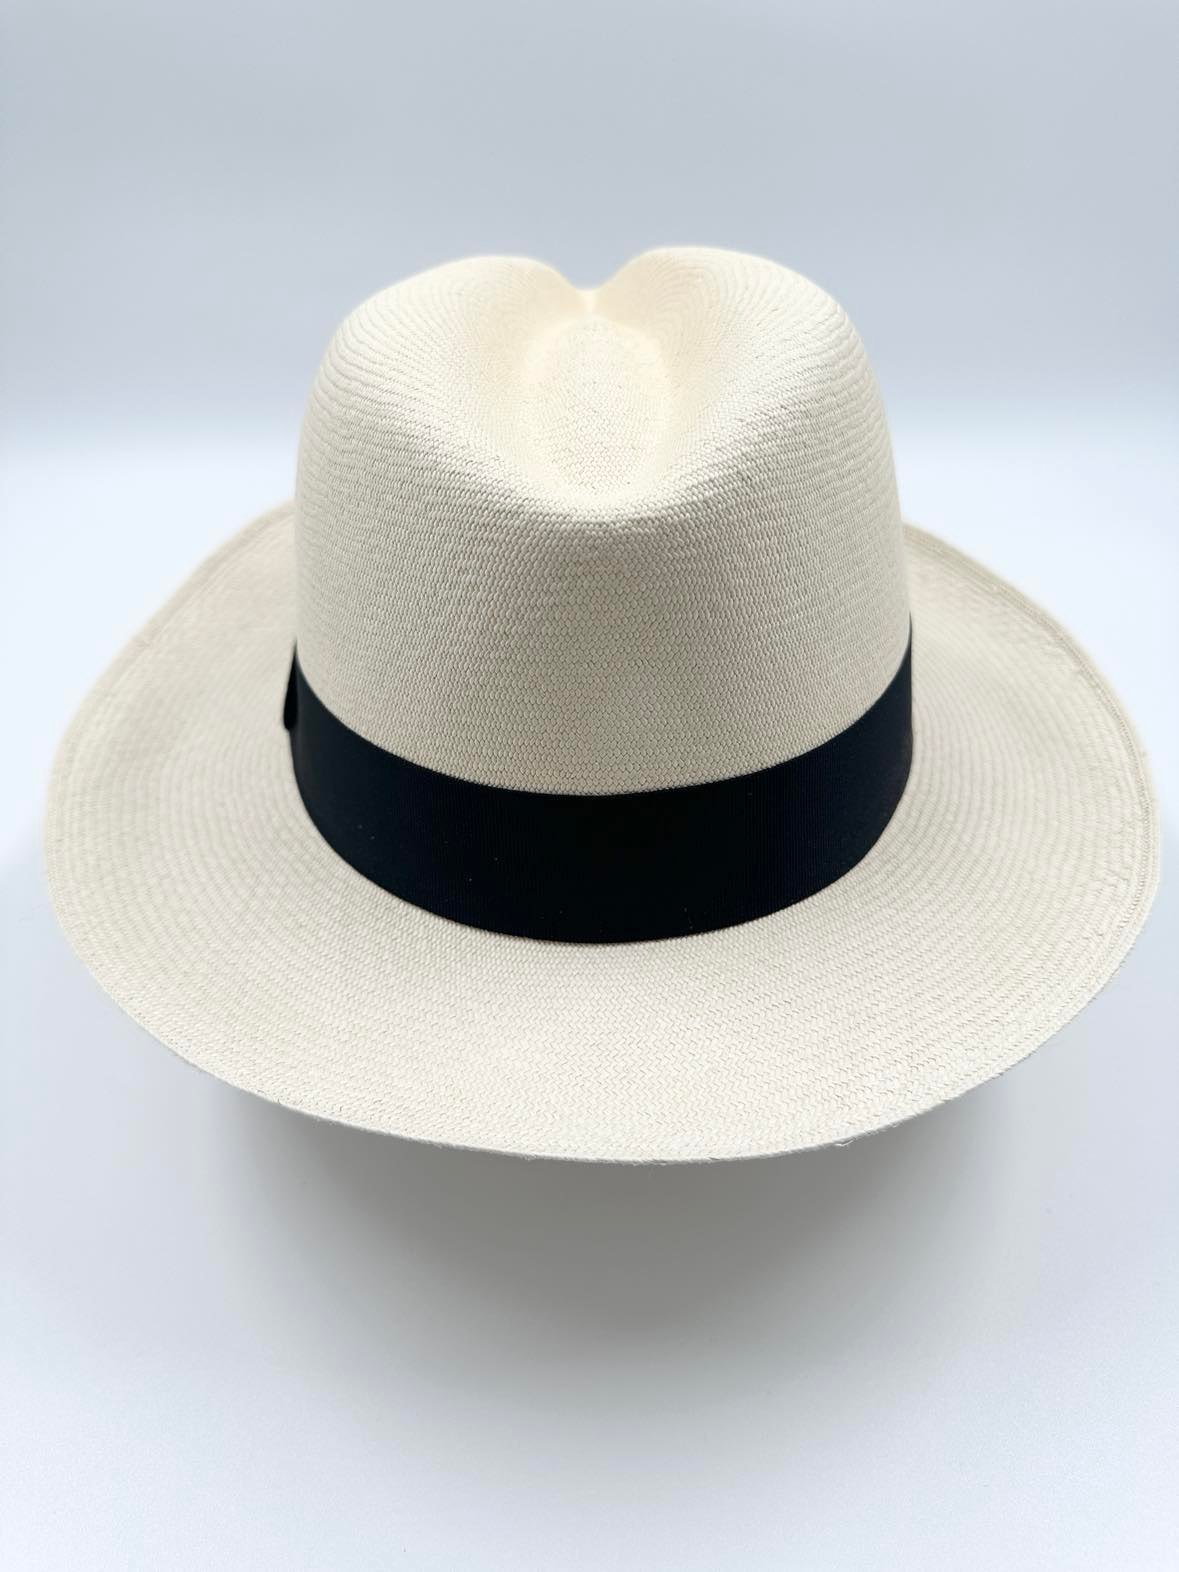 Ægte Montecristi Fedora Panama Hat med en kvalitet på 21-22 fletninger pr. inch - unik og håndflettet i Ecuador